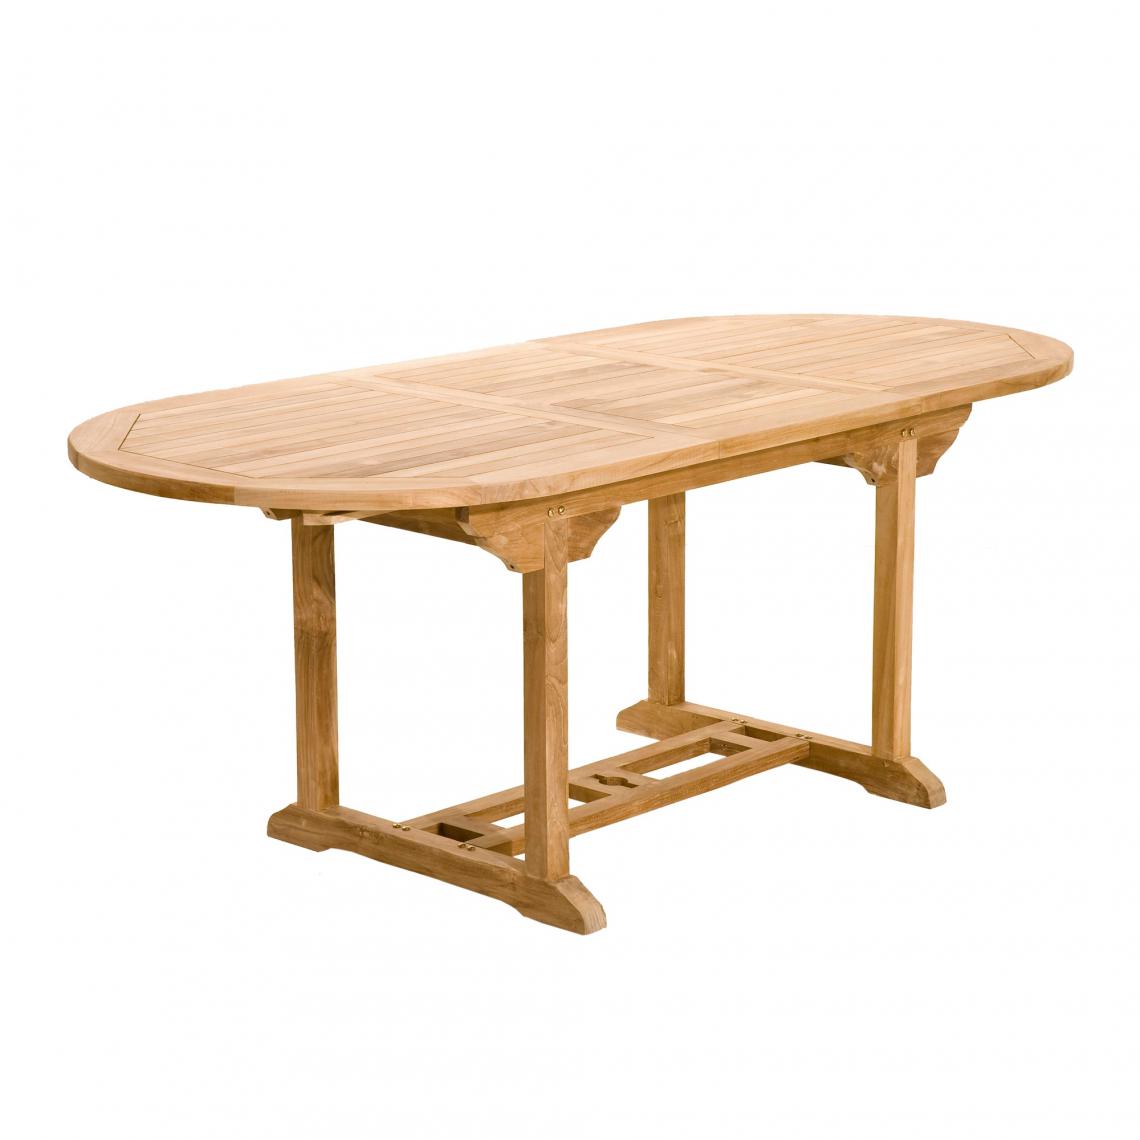 MACABANE - Table ovale extensible 6/8 personnes en teck massif - Teck - Tables de jardin